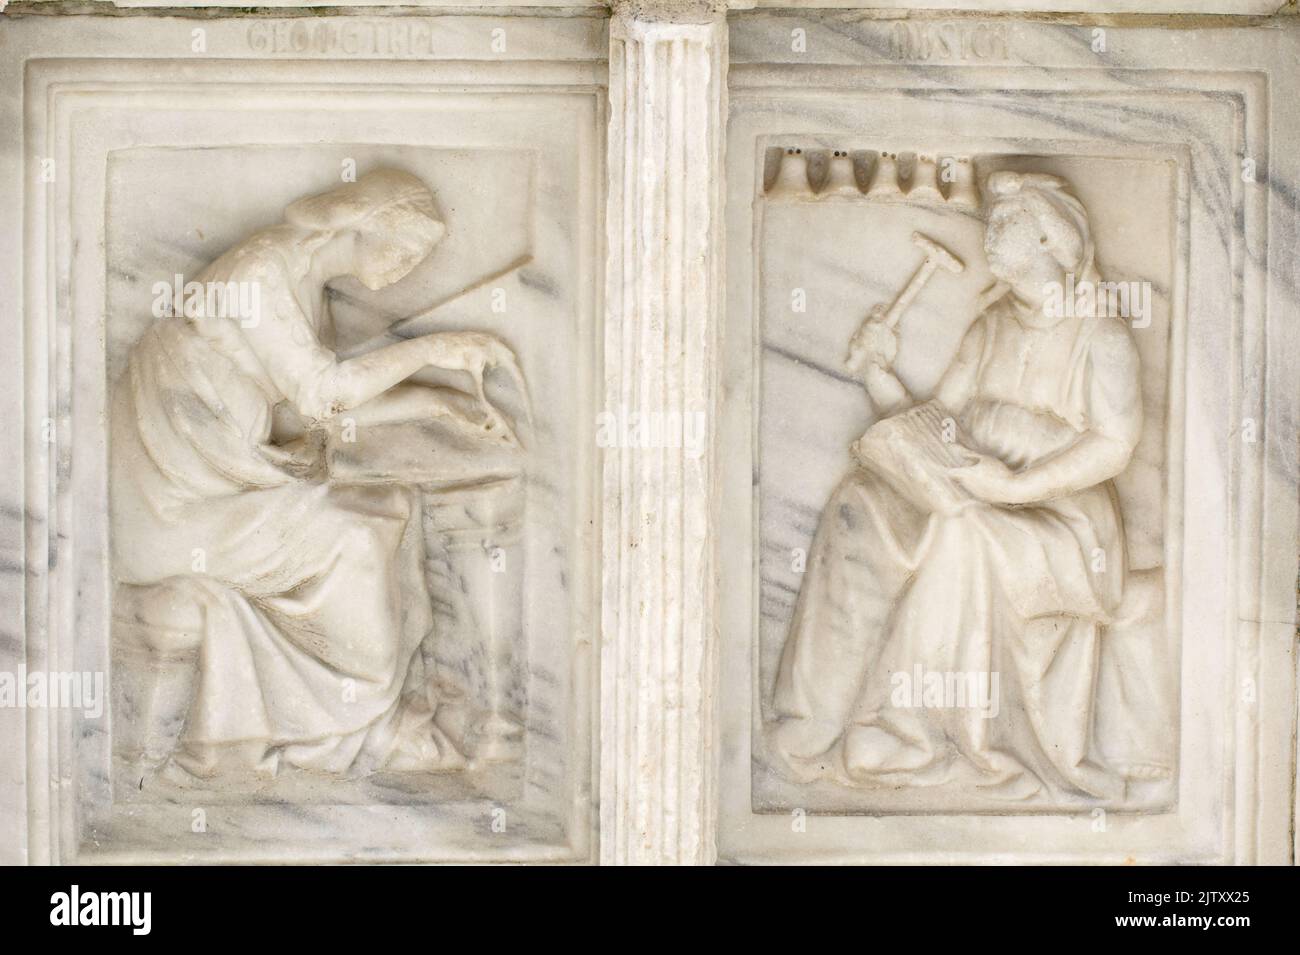 Géométrie et musique - détail de Fontana Maggiore (1275), un chef-d'œuvre de sculpture médiévale symbole de la ville de Pérouse - Italie Banque D'Images